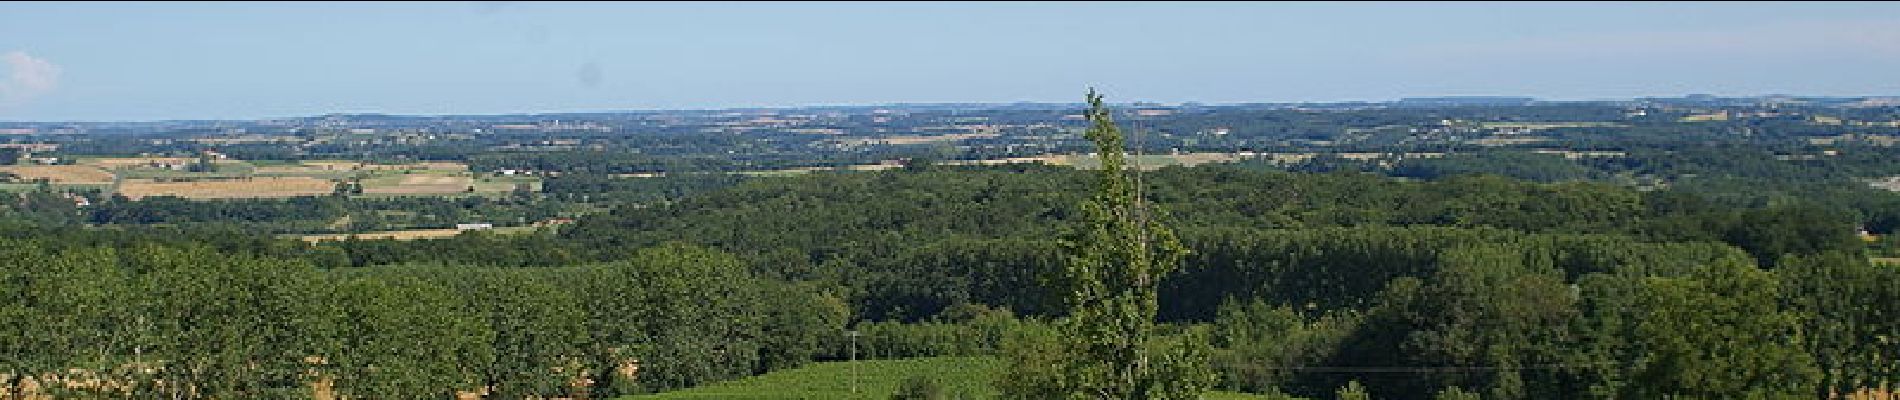 Randonnée Marche Soumensac - Autour des Lacs de l'Escourroux entre Lot-et-Garonne et Dordogne - Pays du Dropt - Photo